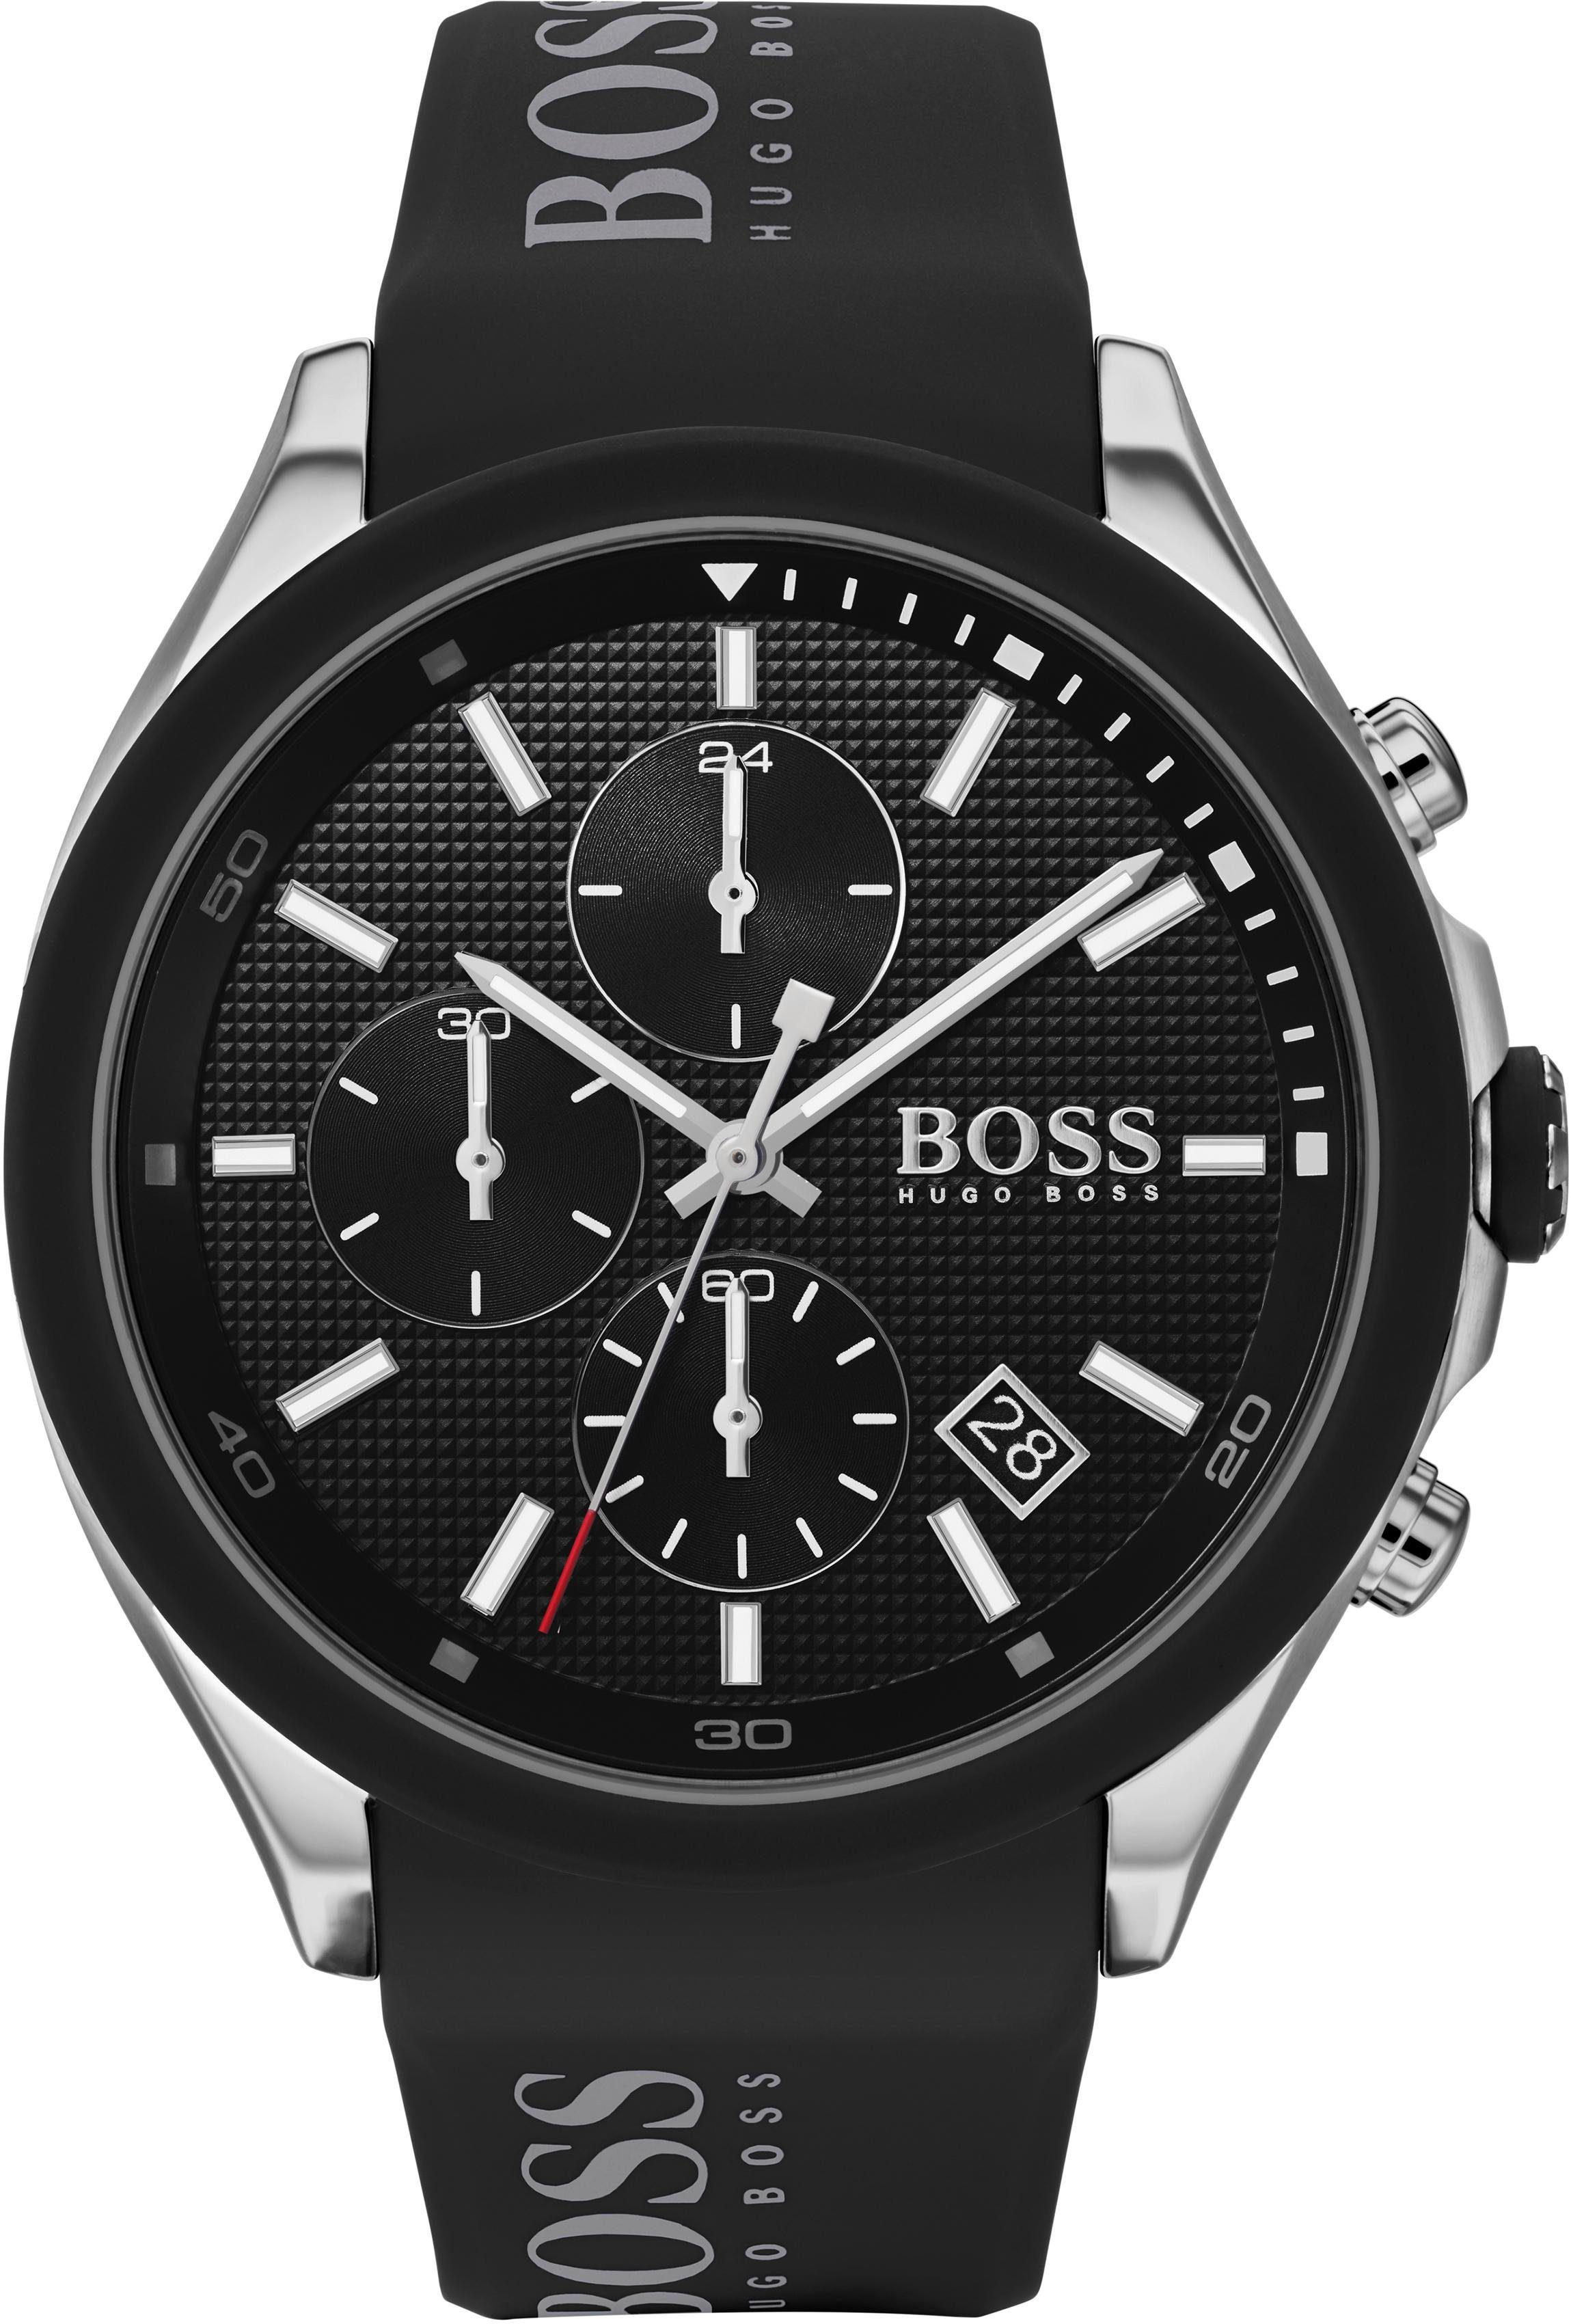 HUGO BOSS Uhren online kaufen | OTTO